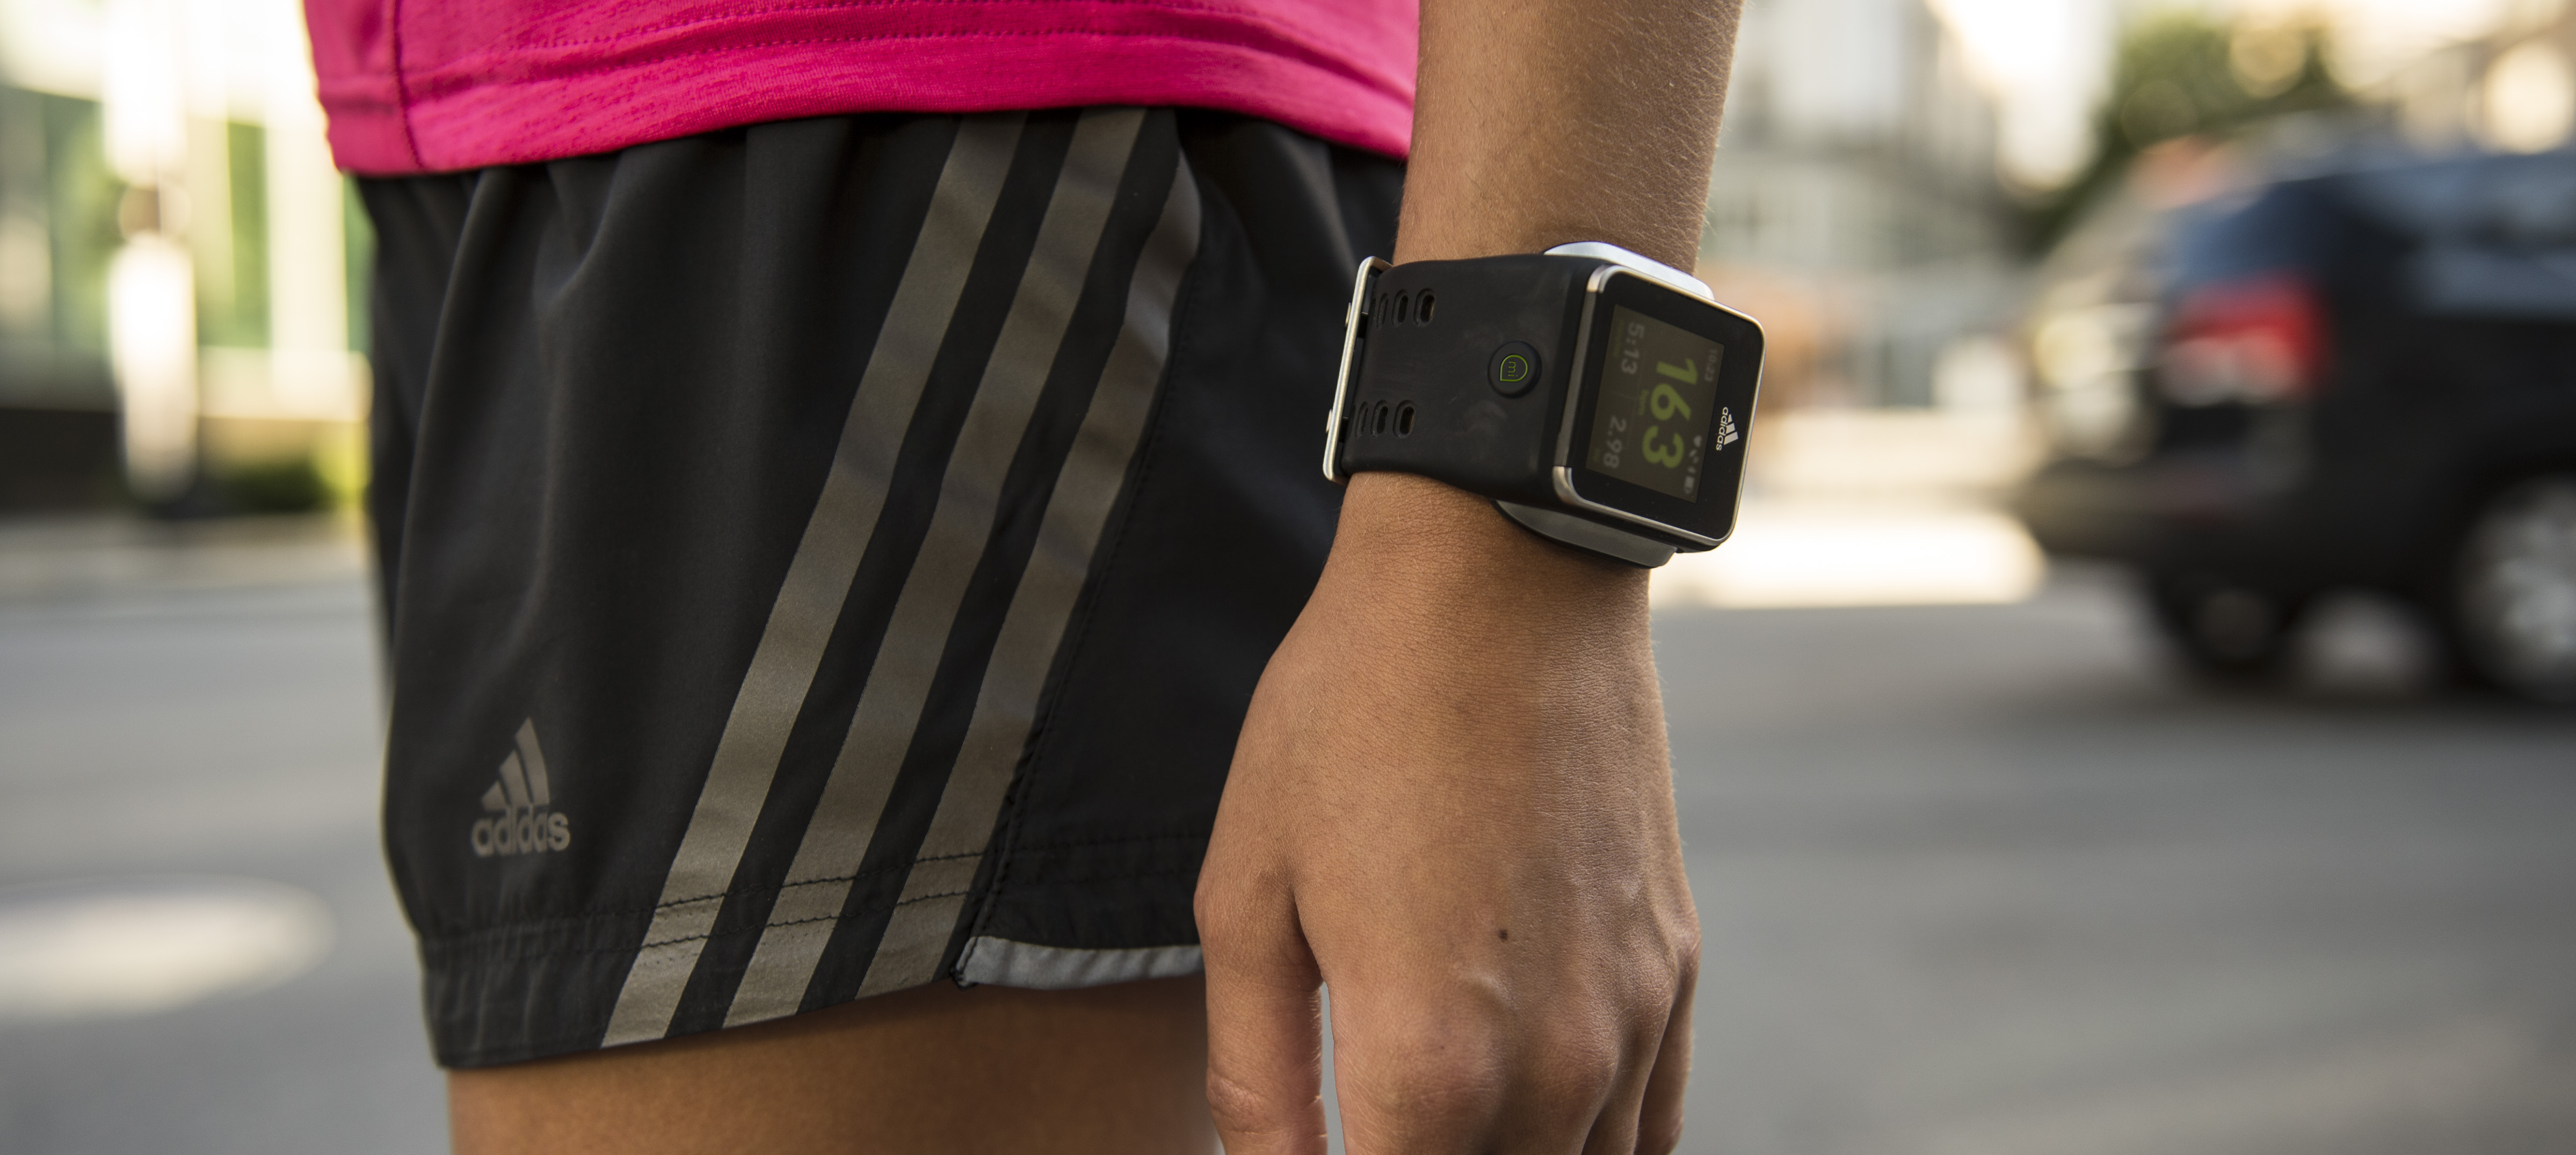 Смарт часы adidas Smart Run MICOACH. Бег часы. Гаджеты в руках. Adidas с часами. Кроссовки адидас с часами